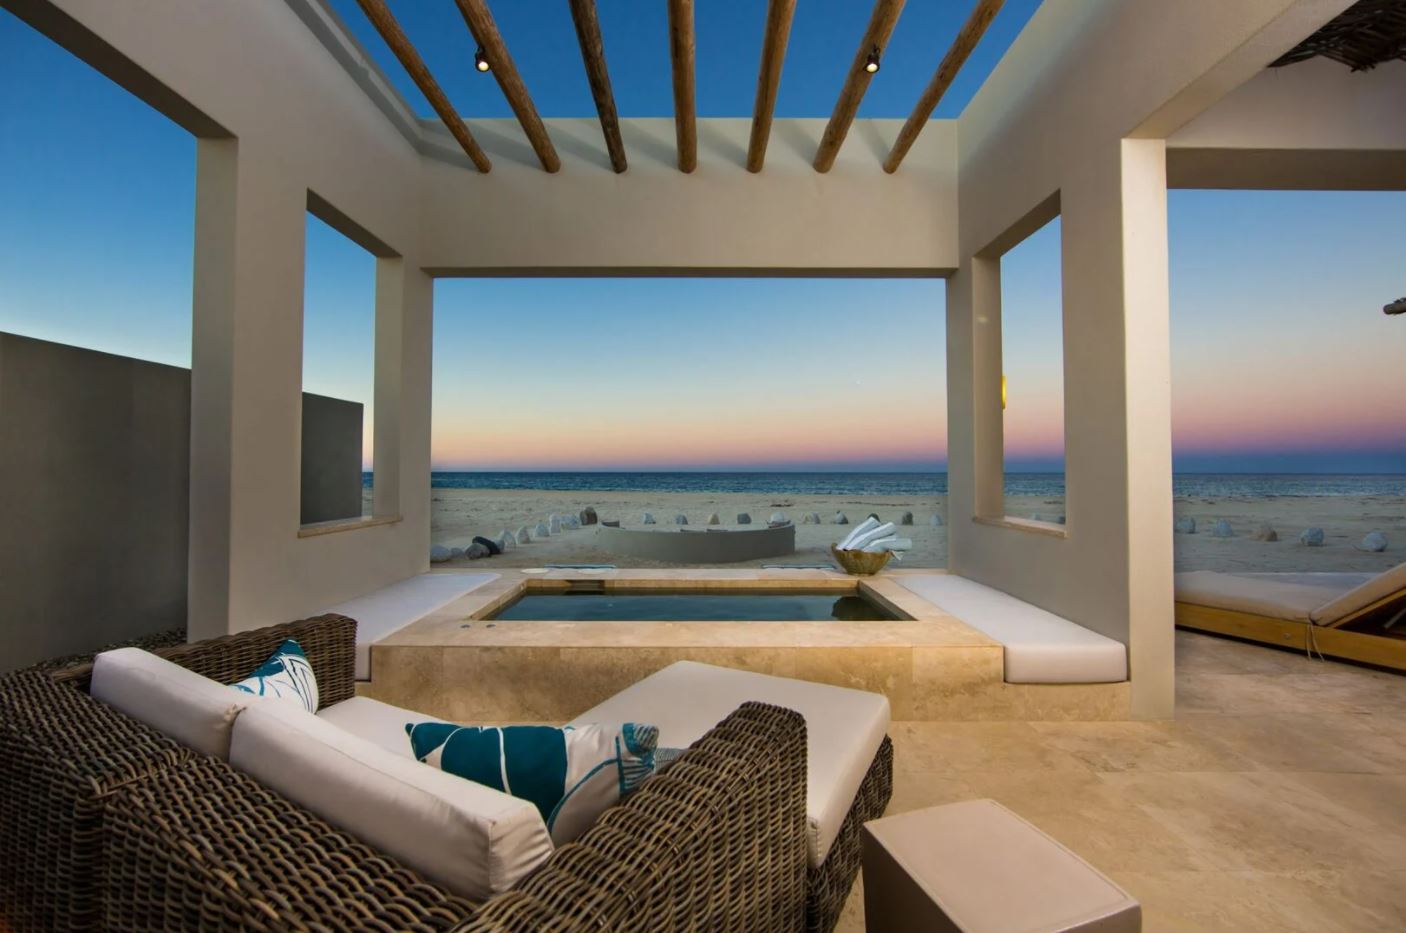 Patio of a La Paz Luxury Rental, facing the ocean